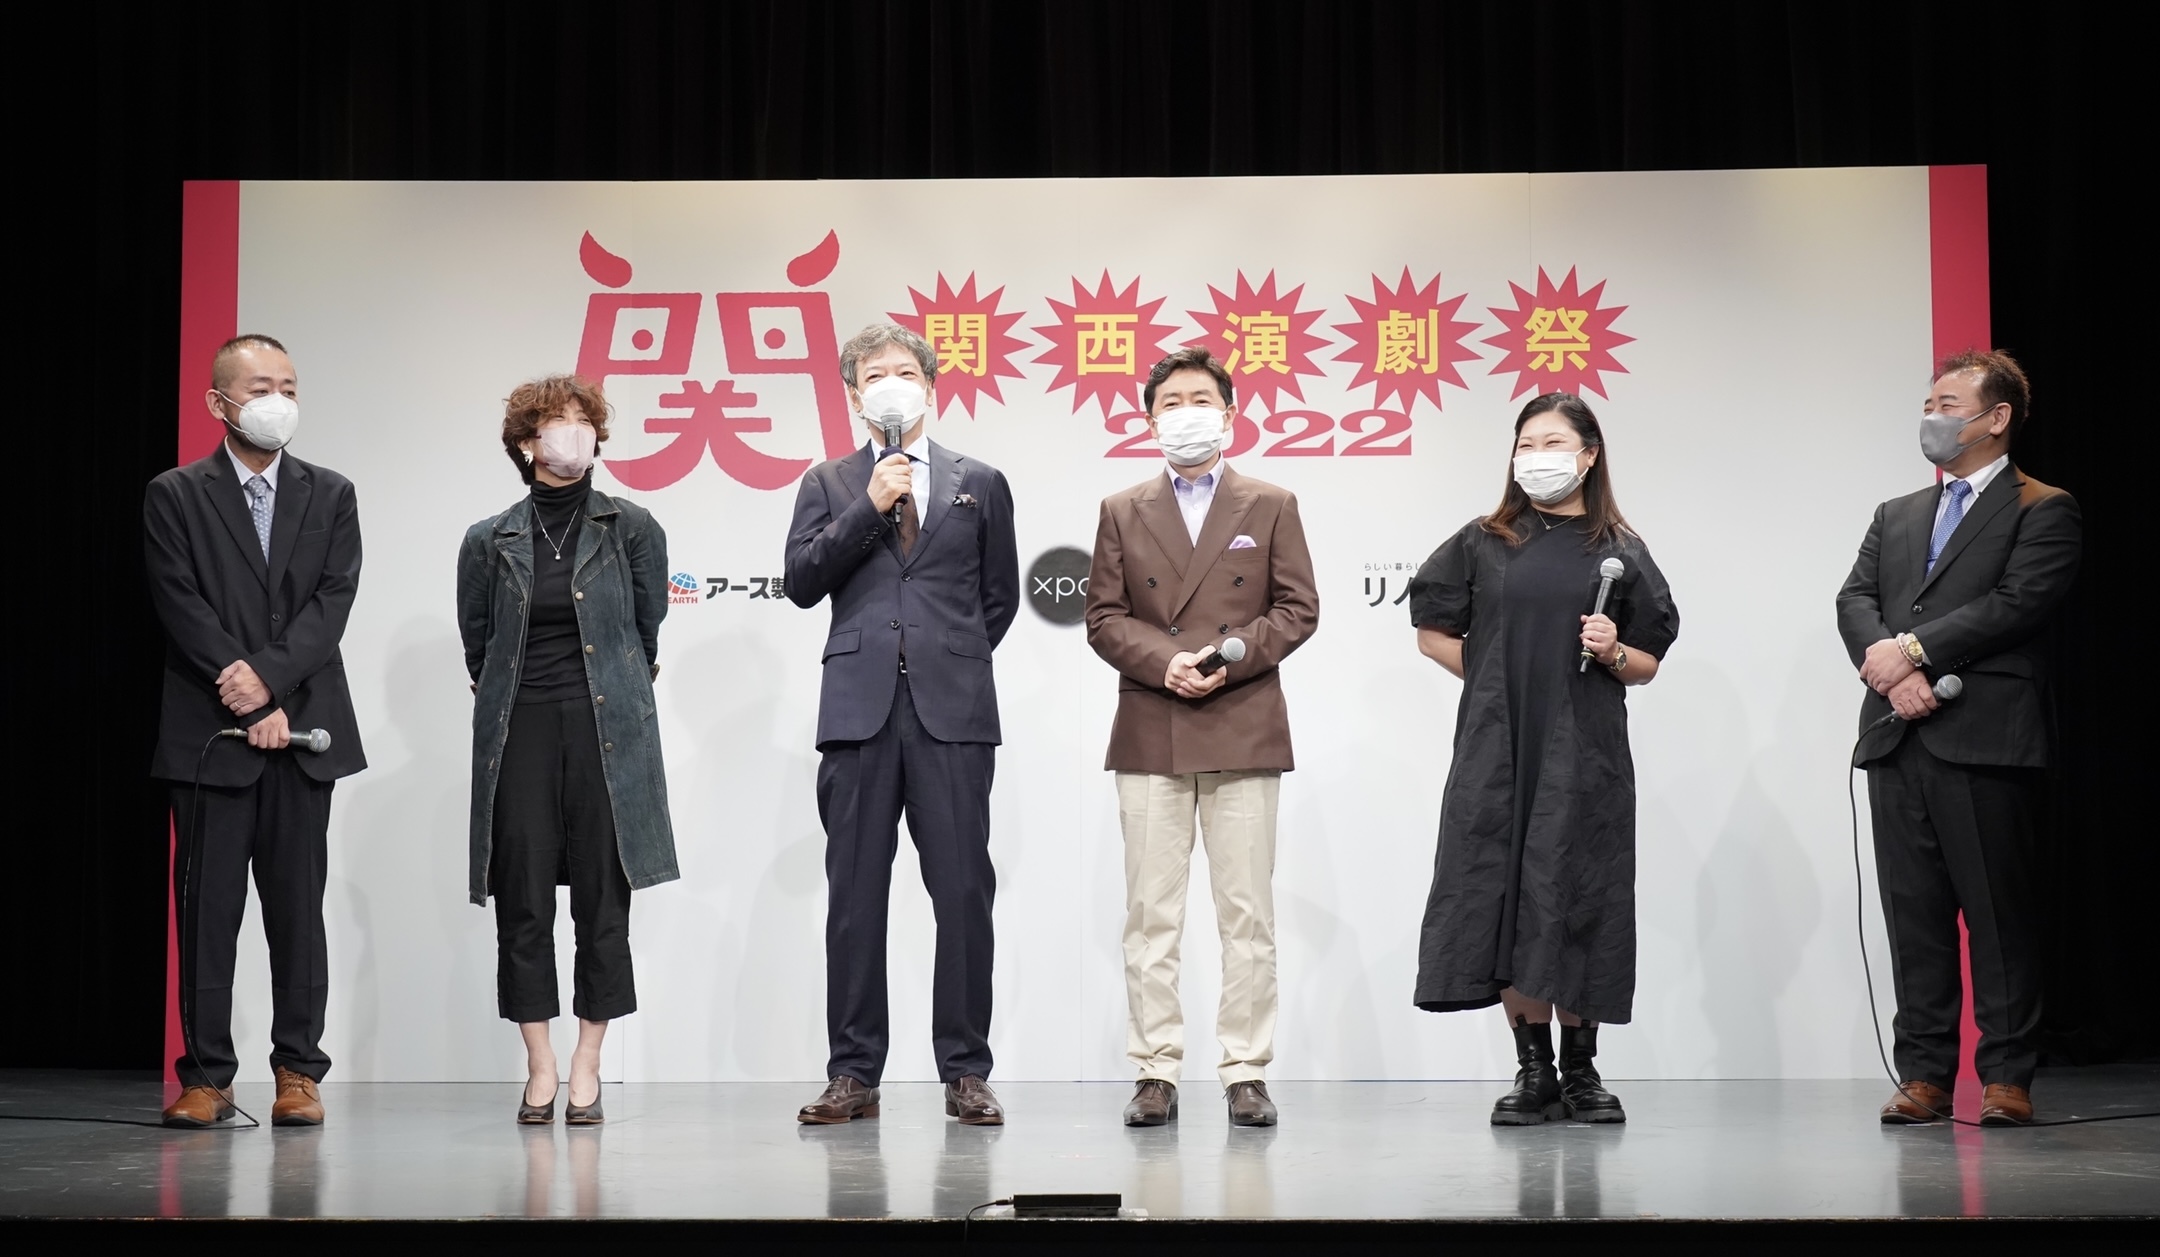 （左から）西田シャトナー、三島有紀子、板尾創路、笠井信輔、野上祥子、山本敏彦